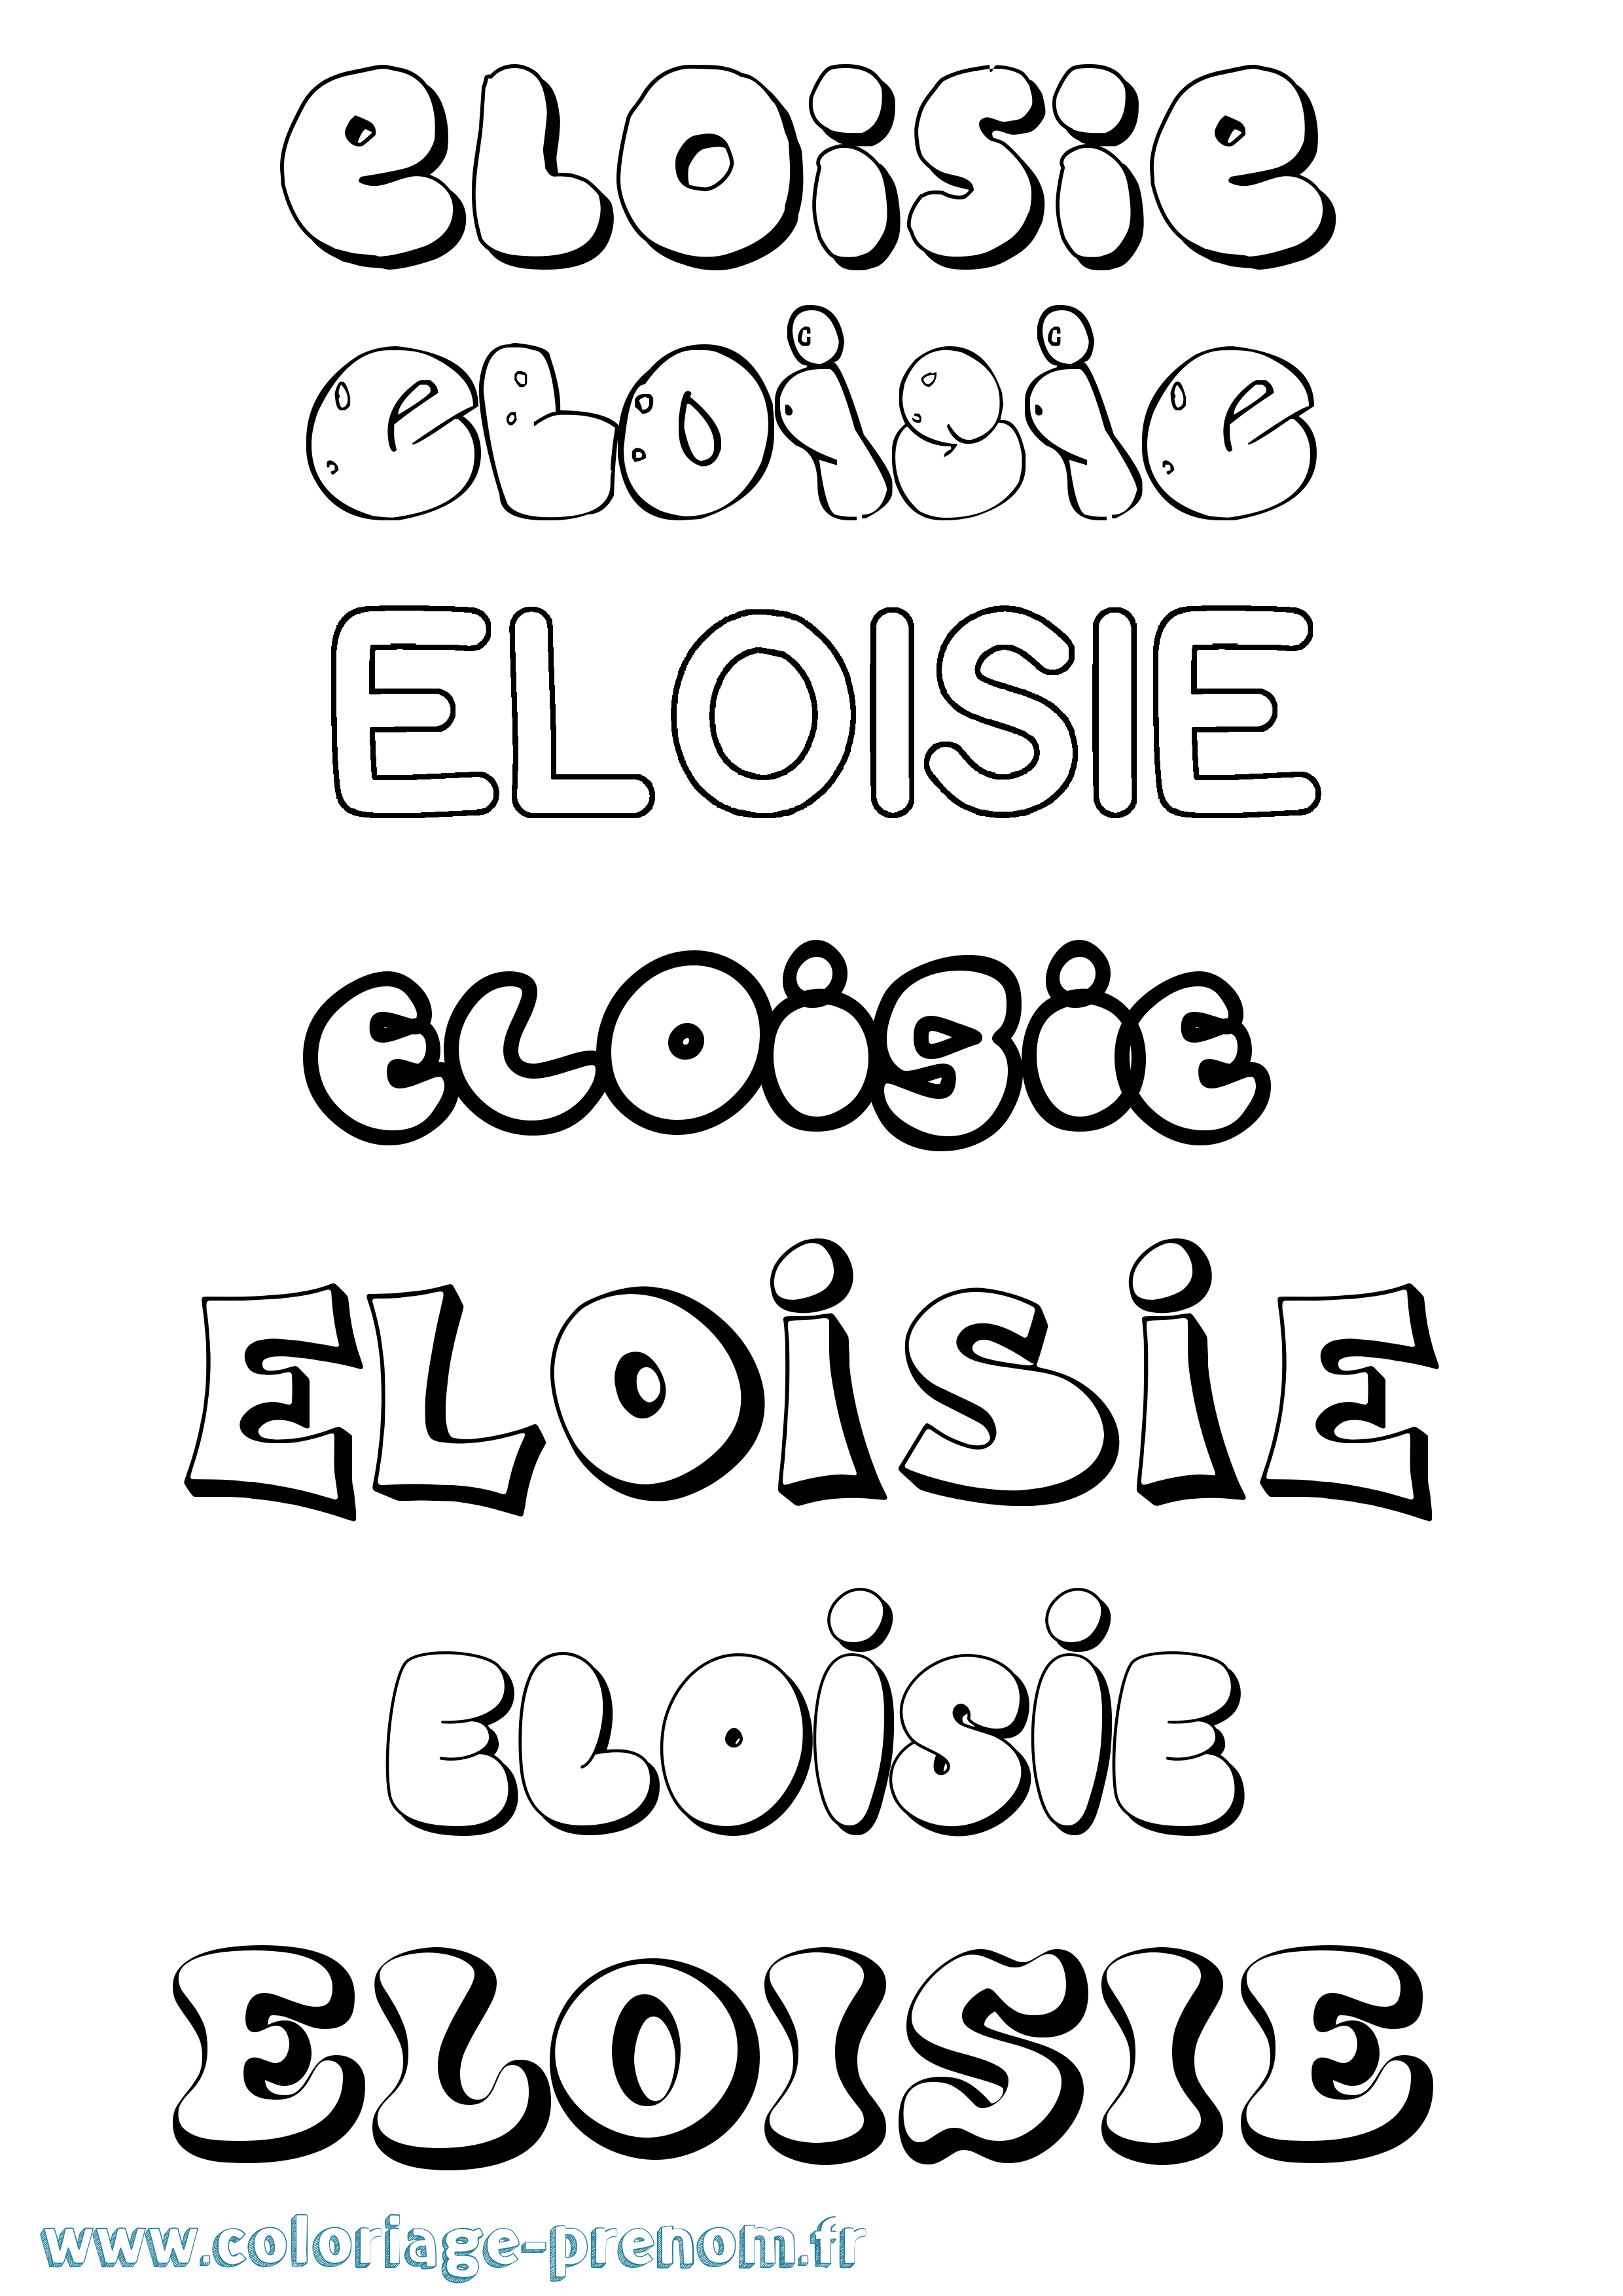 Coloriage prénom Eloisie Bubble